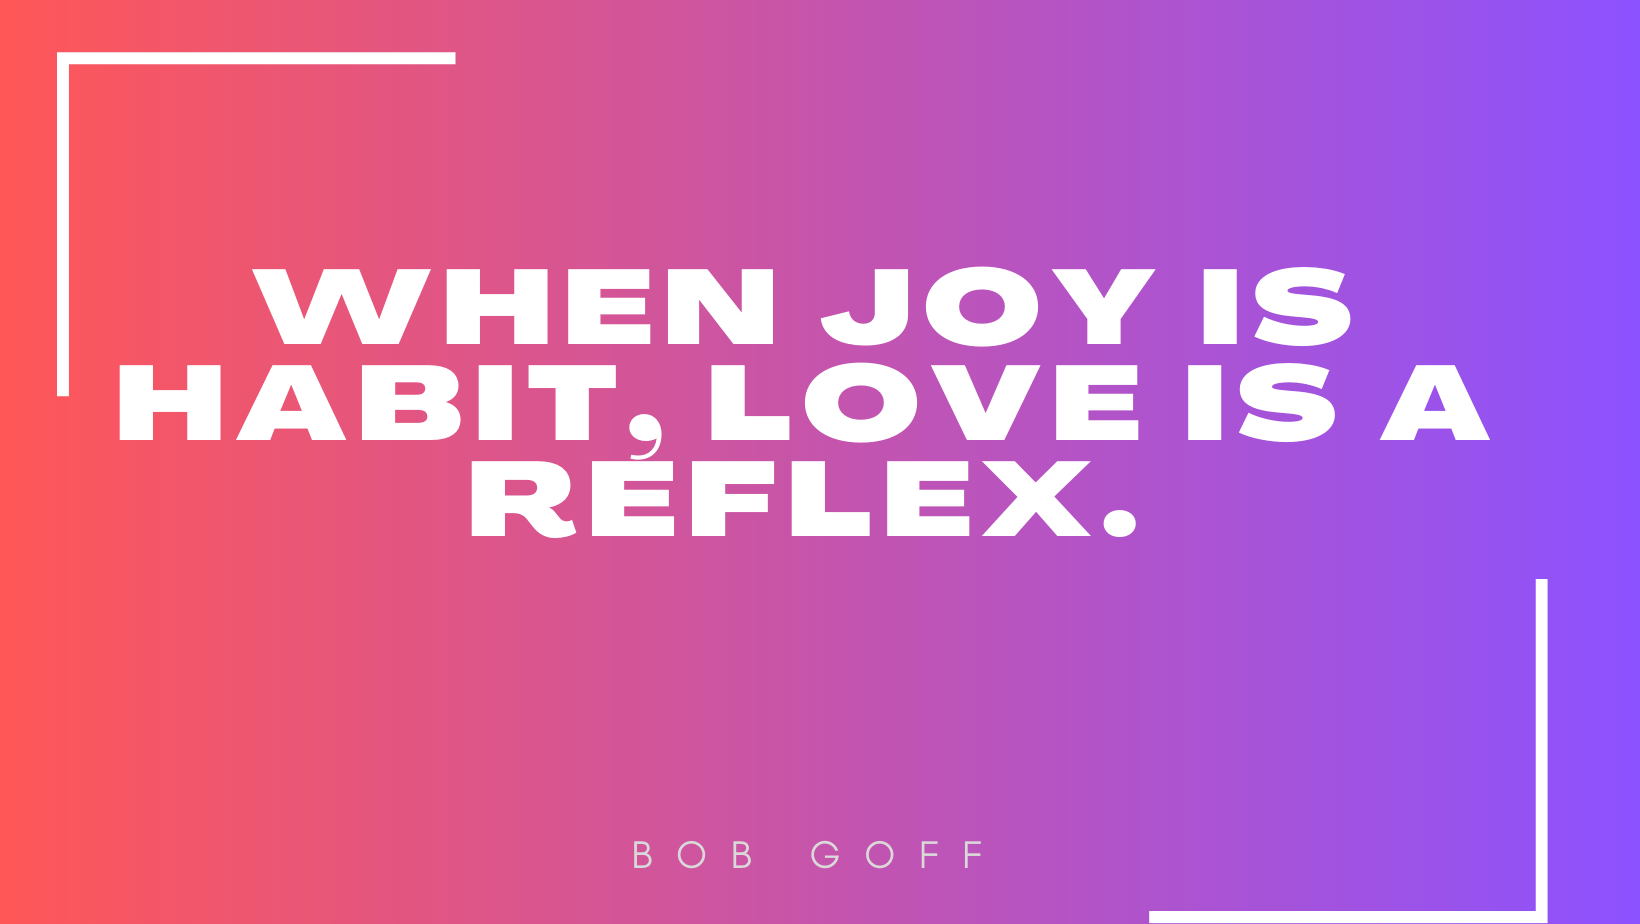 'When joy is habit, love is a reflex.'